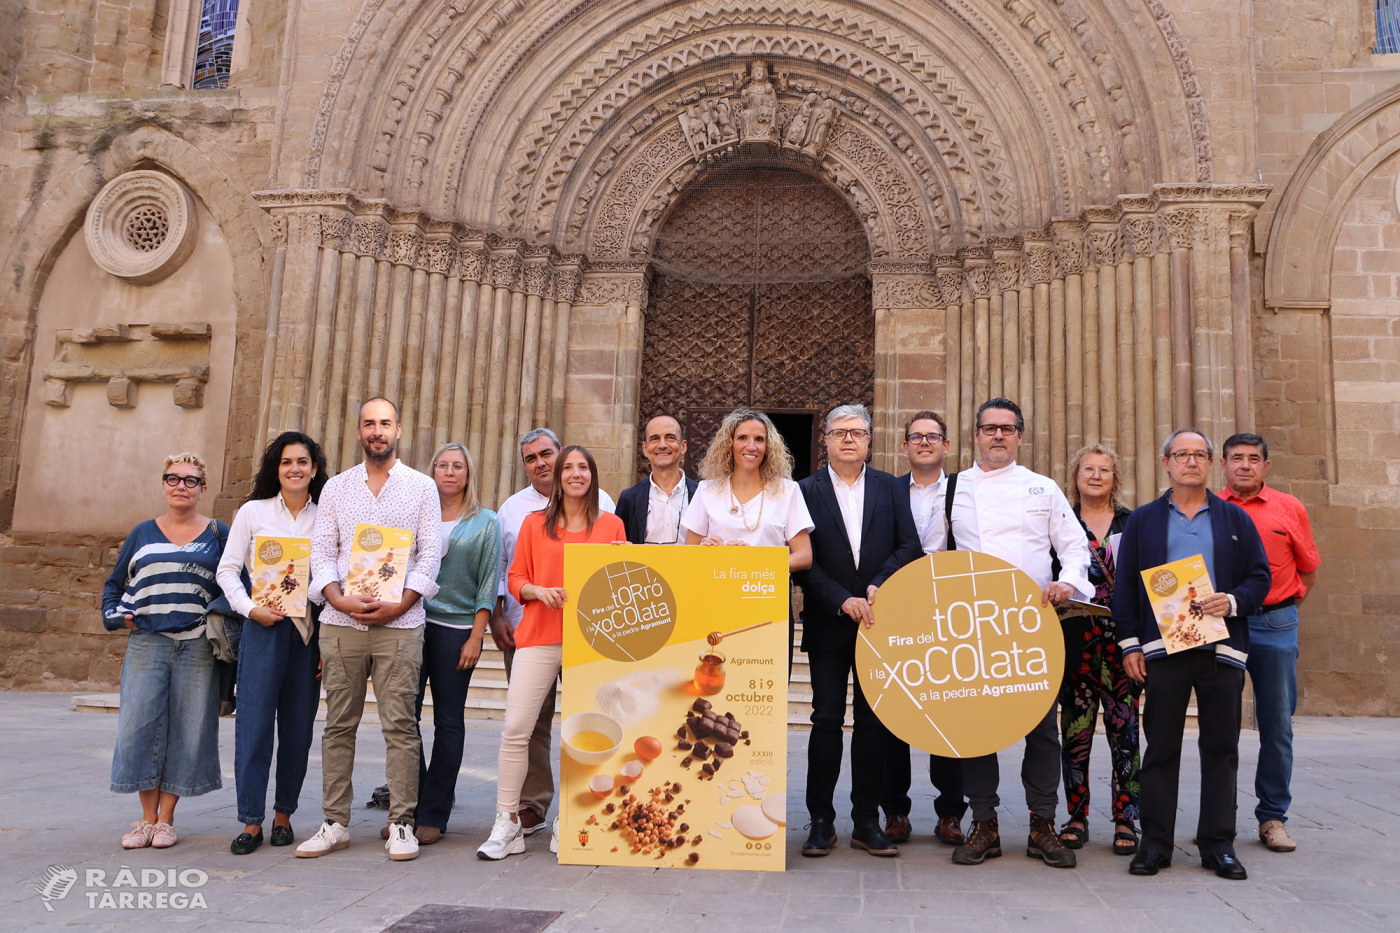 La 33a edició de la Fira del Torró i la xocolata a la pedra d'Agramunt estrena un espai dedicat a la xocolata i el vi